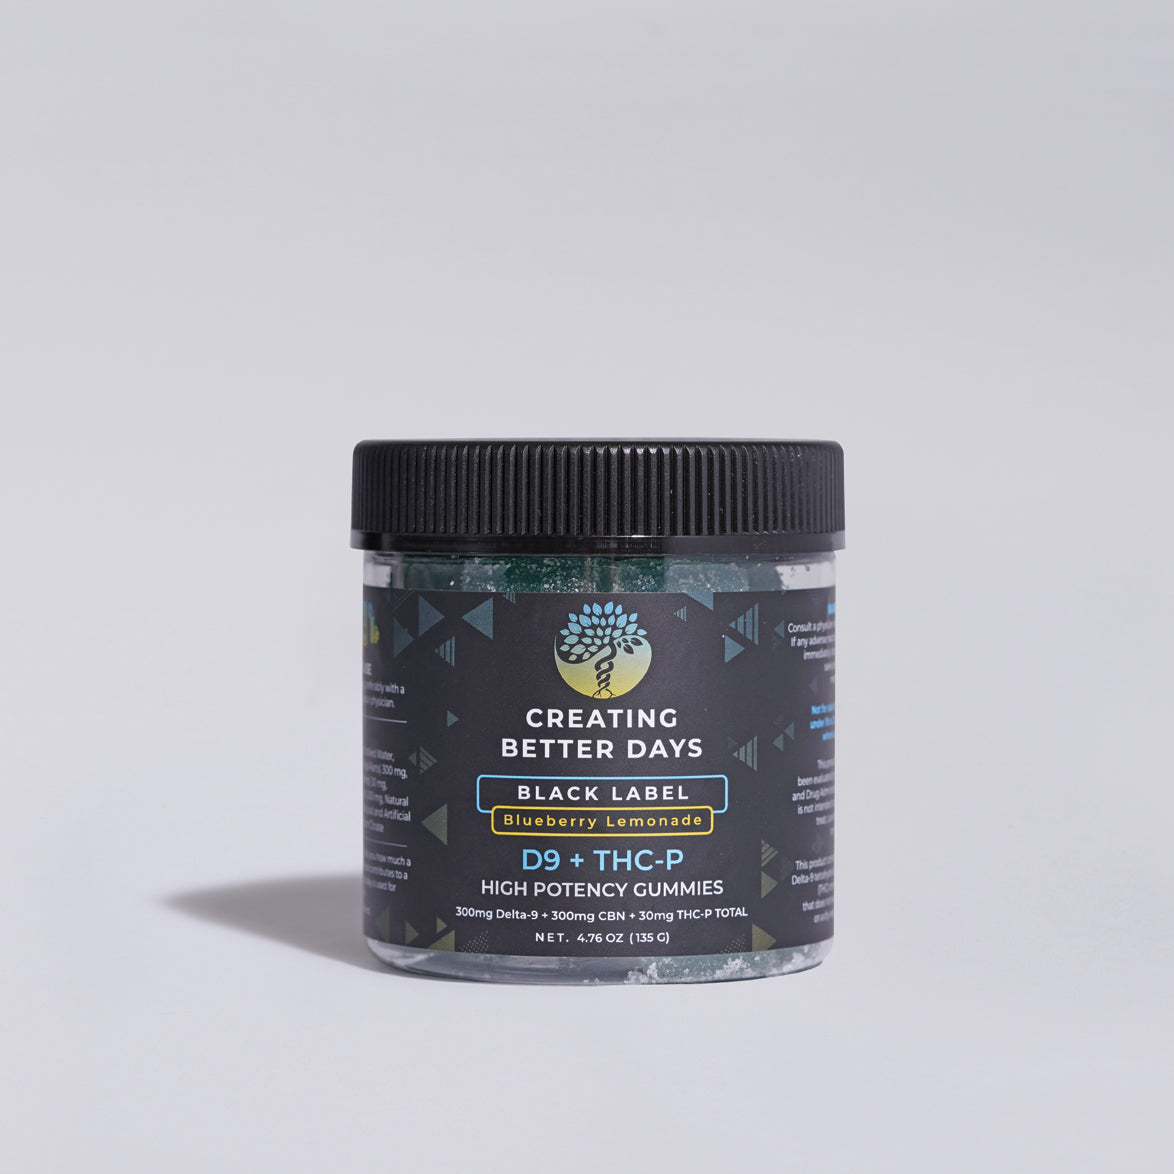 630mg Blueberry Lemonade Delta-9/CBN/THC-P Gummies - Black Label | Creating Better Days